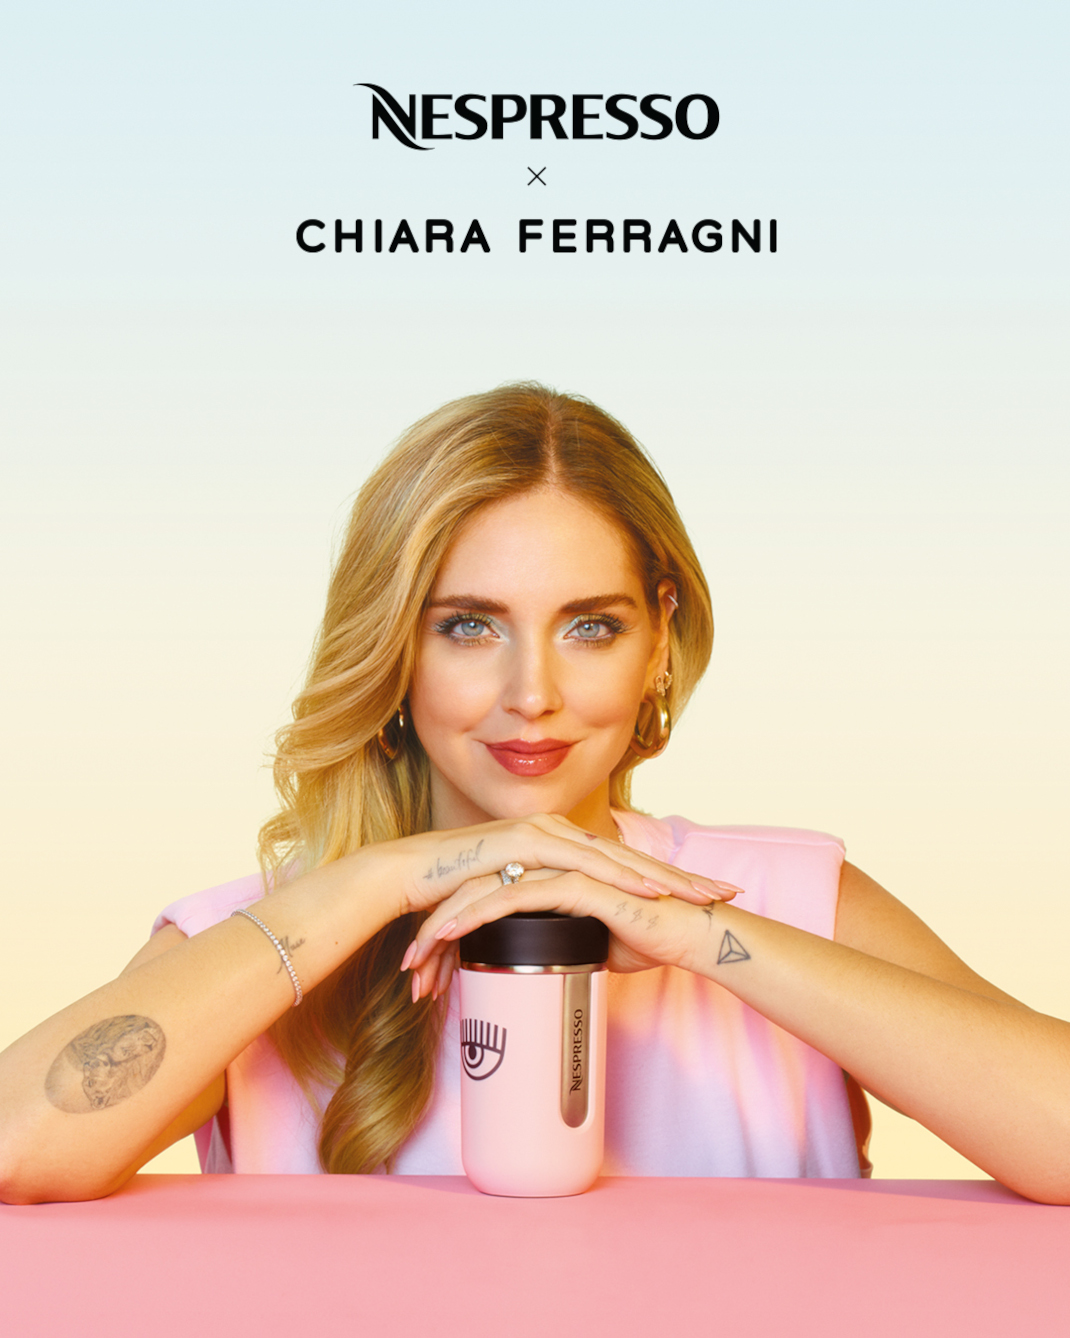 Nespresso x Chiara Ferragni